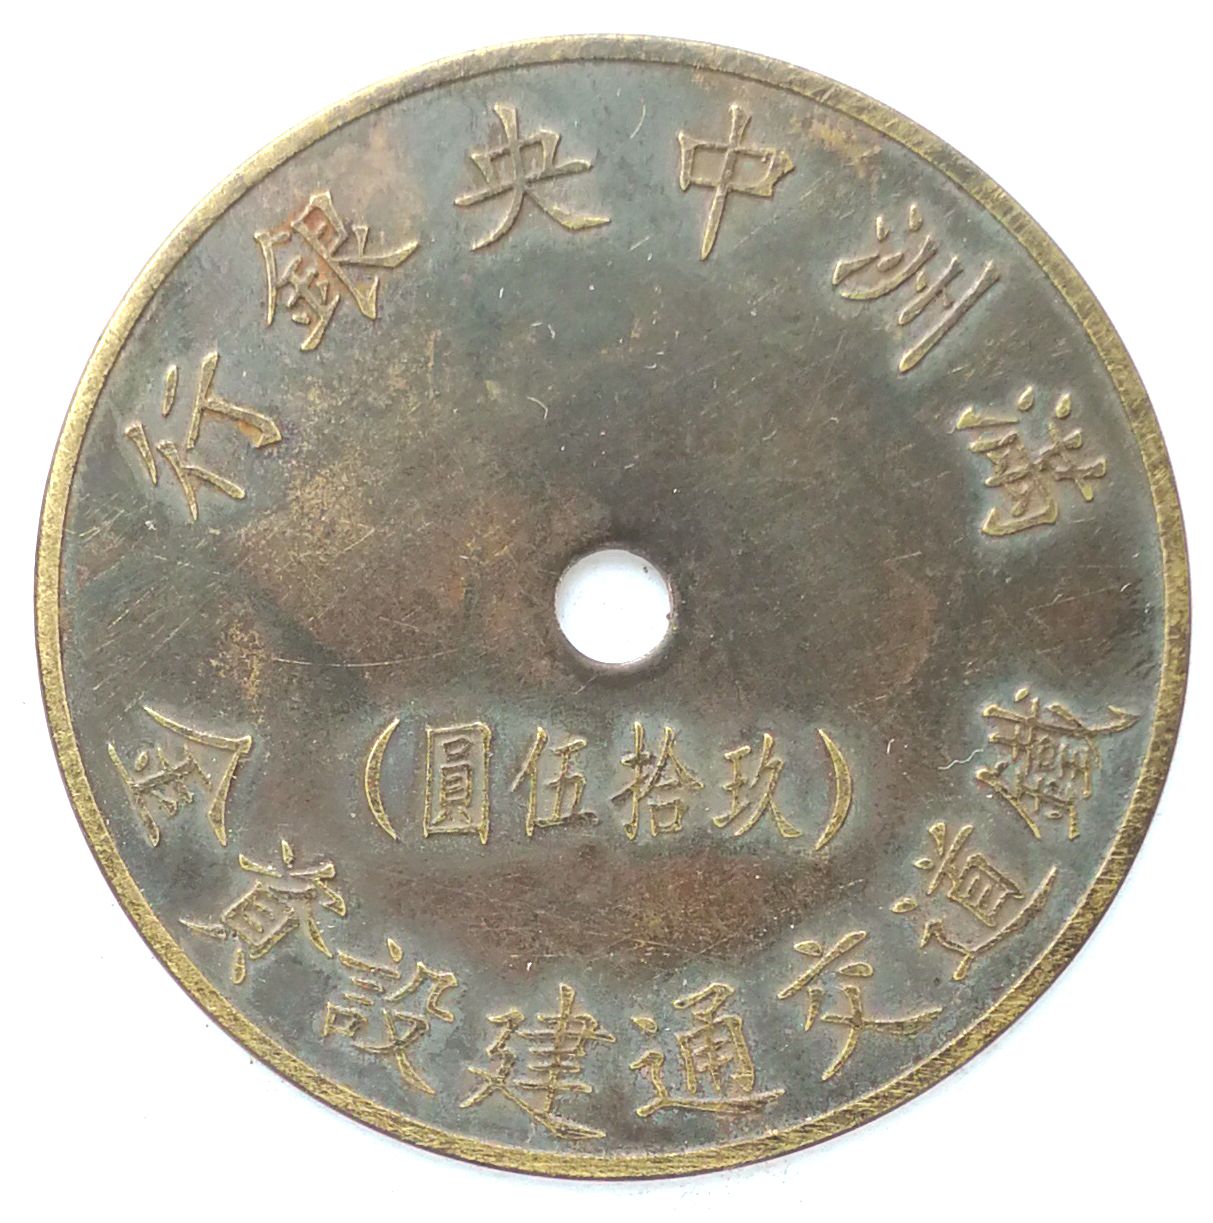 BT468, Railway Construction Fund, Manchukuo Token, 95 Yen, China 1944